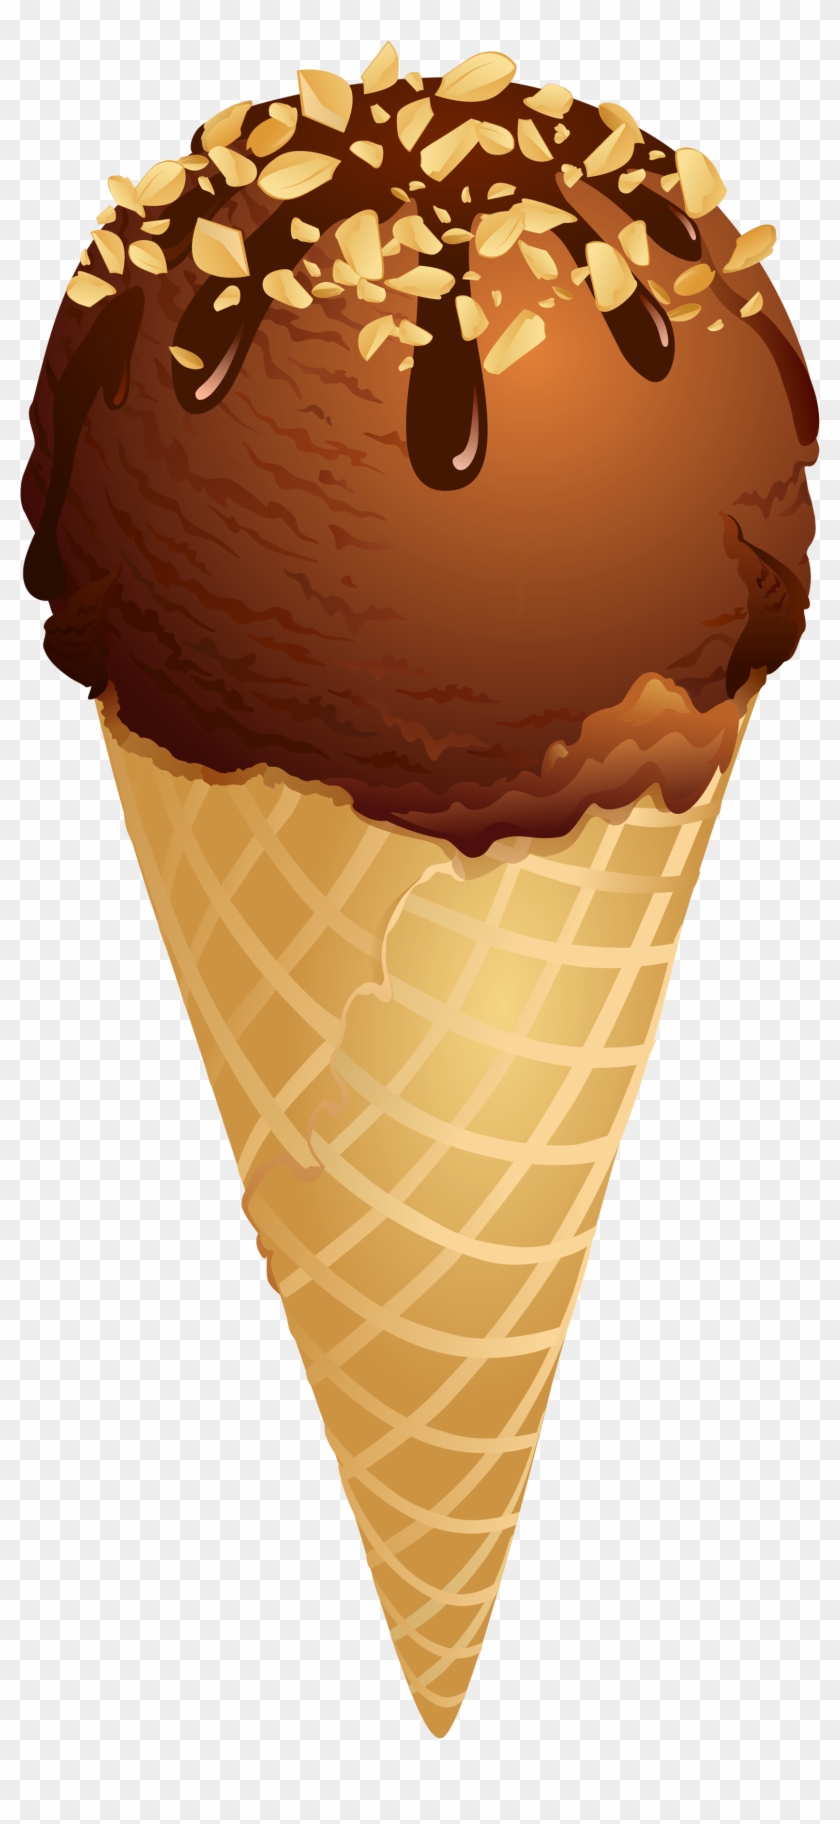 Ice Cream Free Ice Cream Clip Art Pictures Free Vector - Clipart Of Ice Cream Cone #1085635